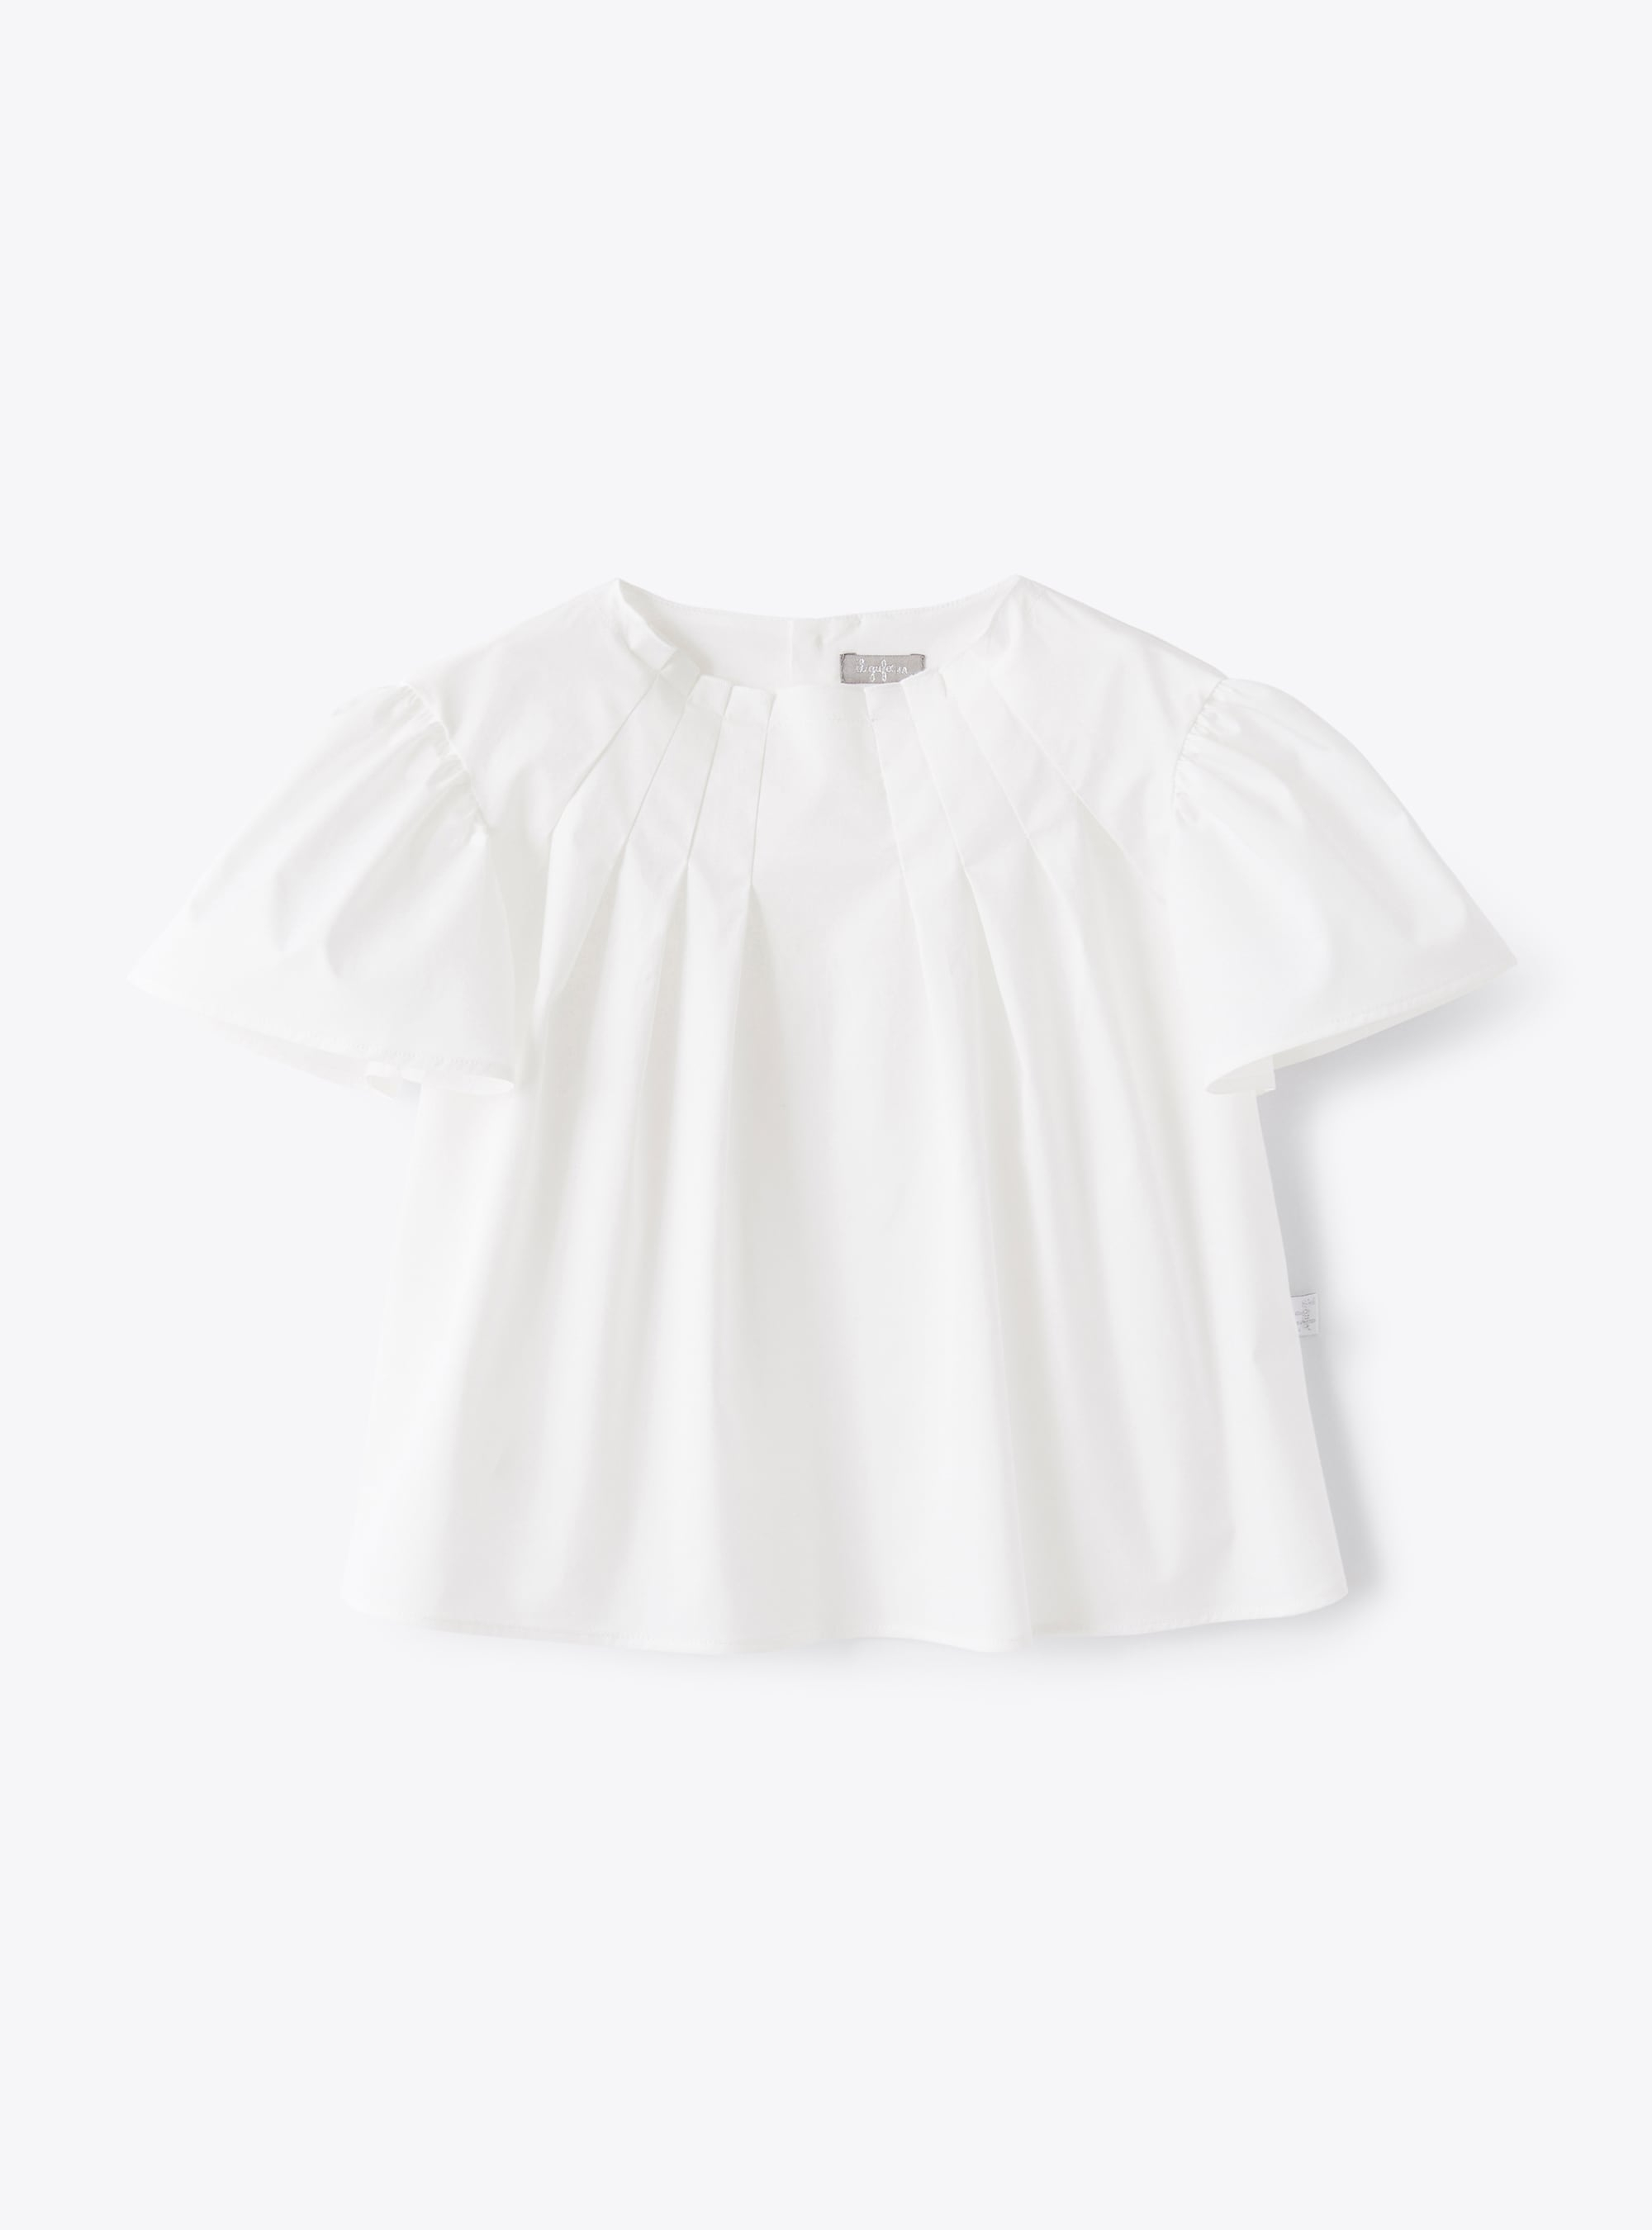 Hemd aus weißem Baumwollsatin - Hemden - Il Gufo